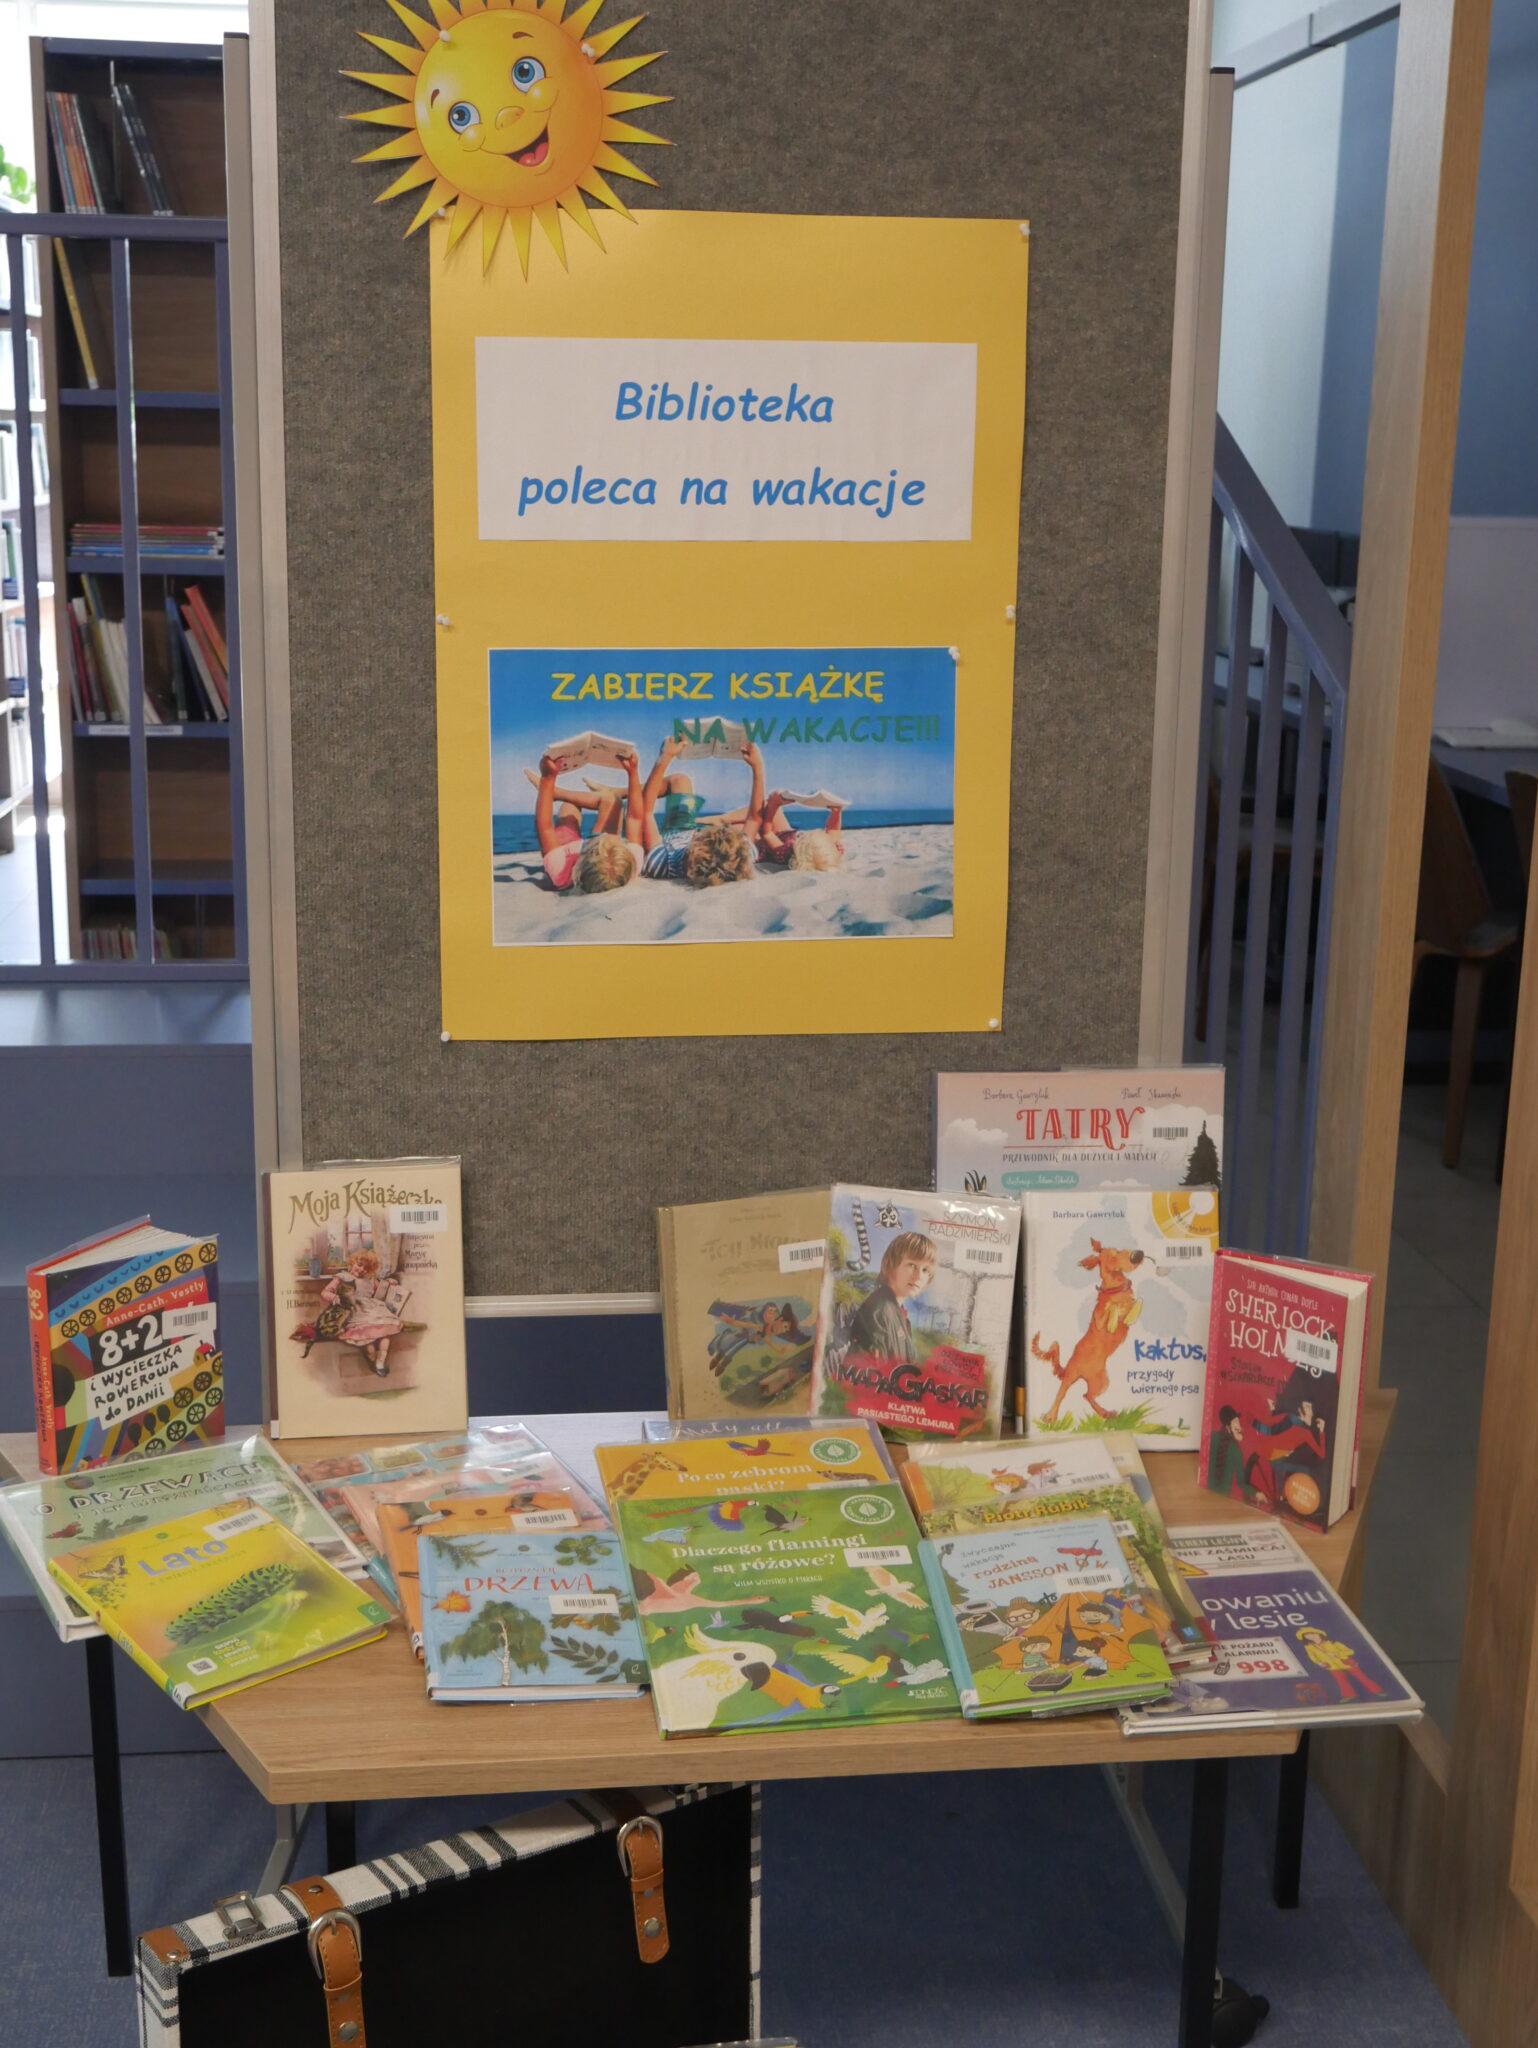 Wystawka książek polecanych dla dzieci na wakacje. Napis Biblioteka poleca na wakacje